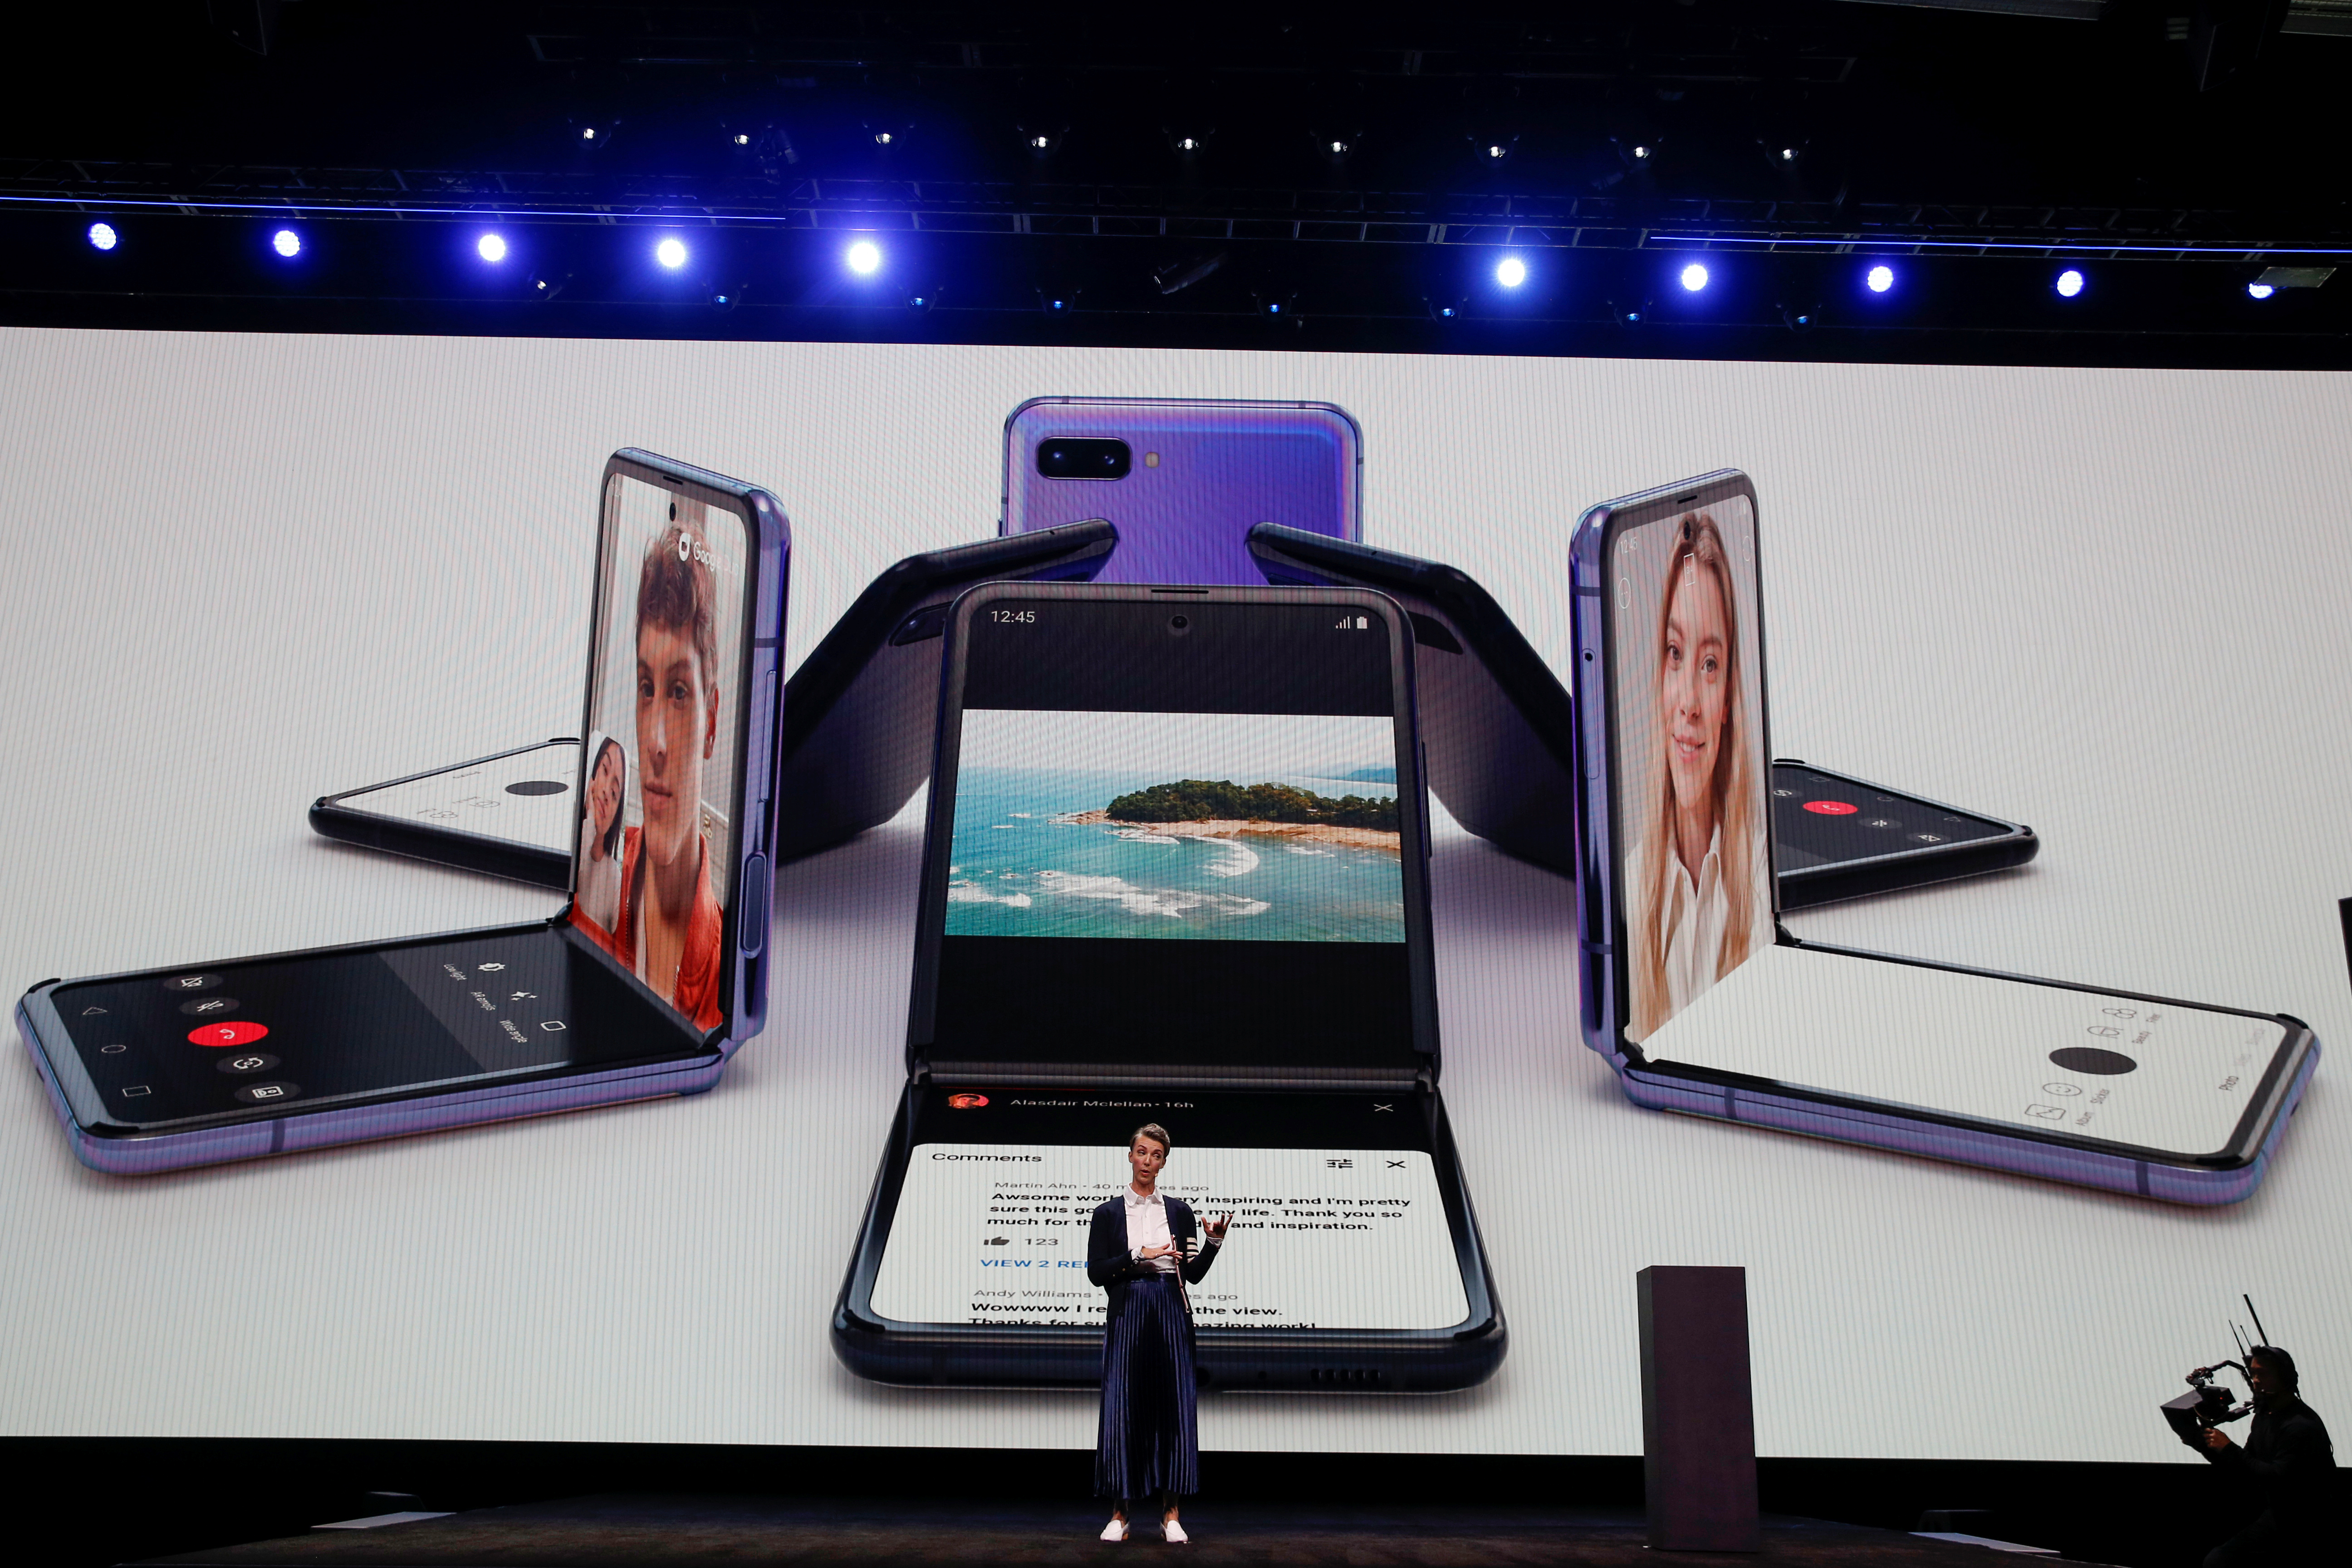 Samsung presentó su nuevo teléfono plegable Galaxy Z Flip (Fotos)